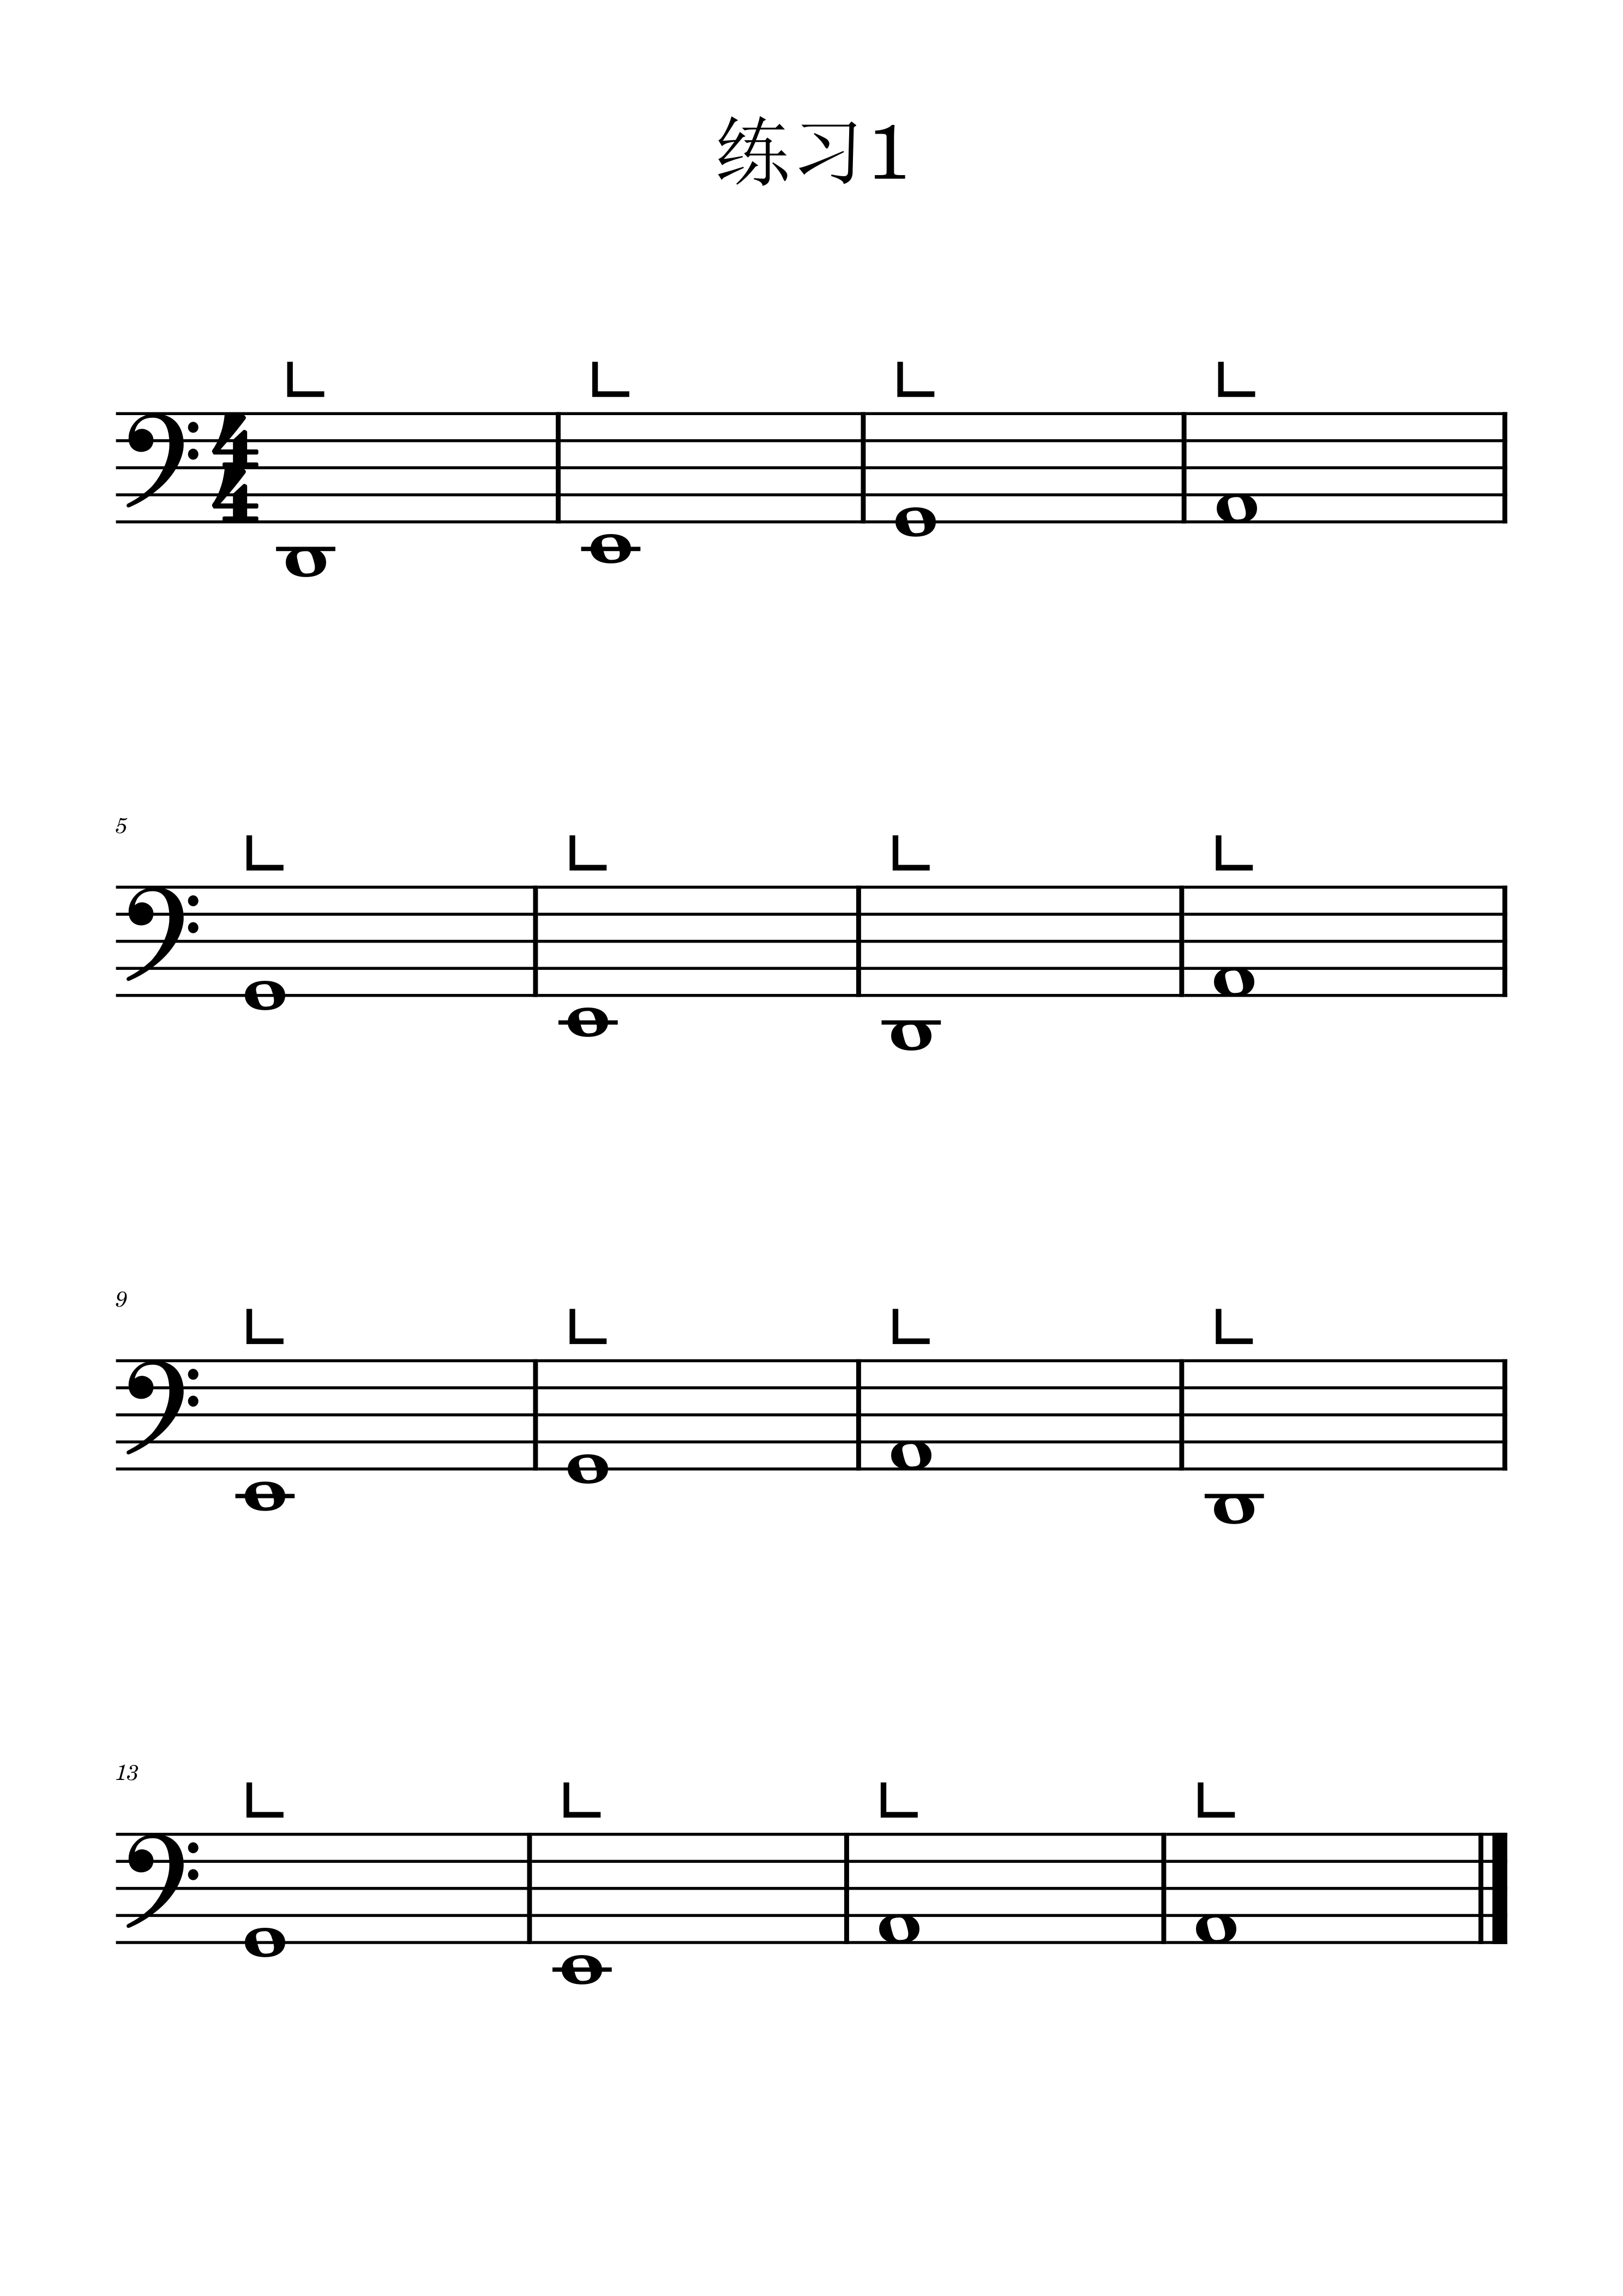 Etude 1 in key C of Guzheng staff score（guzheng sheet music）